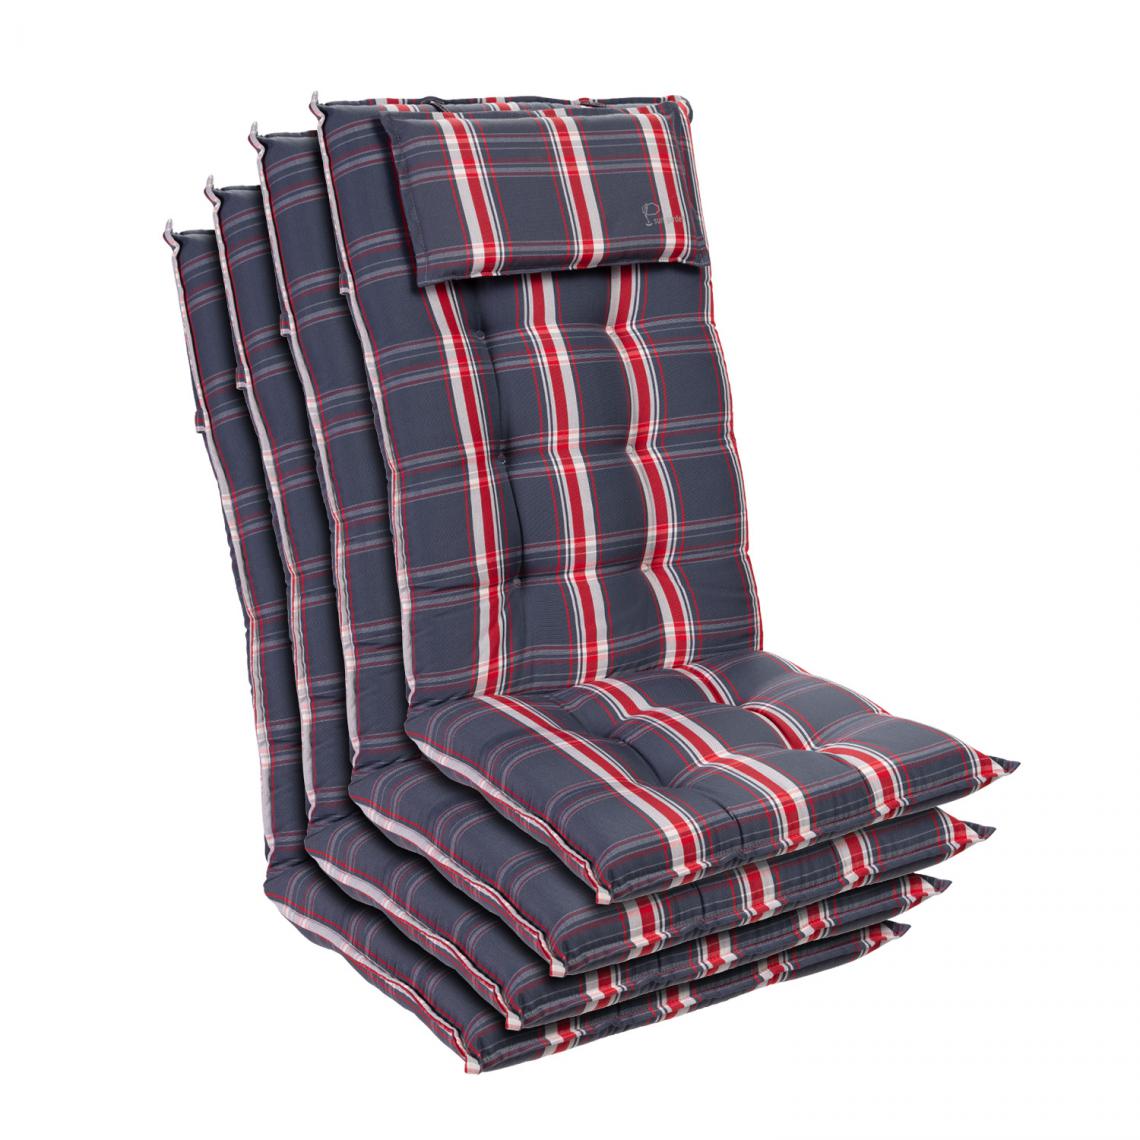 Blumfeldt - Sylt coussin de fauteuil appuie-tête pour dossier haut Polyester 50x120x9cm - Coussins, galettes de jardin